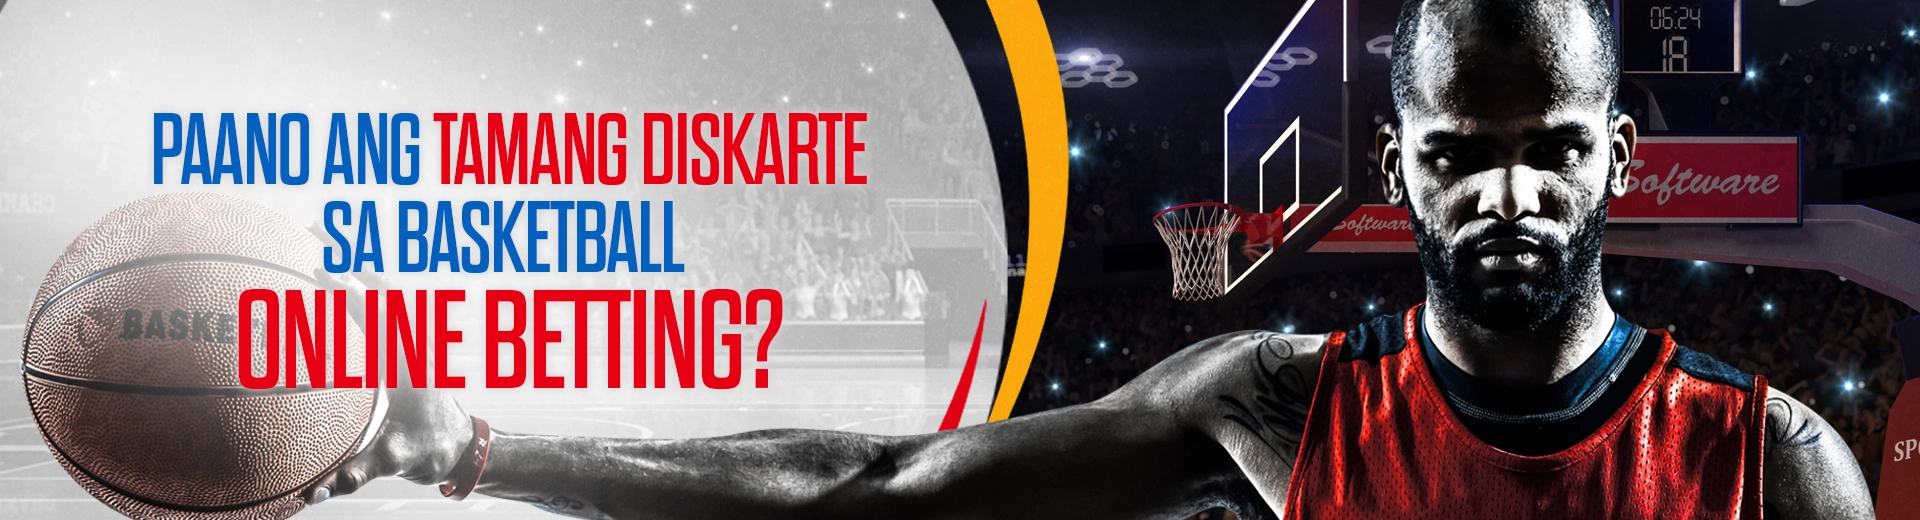 OKBet Tamang Diskarte sa Basketball Online Betting